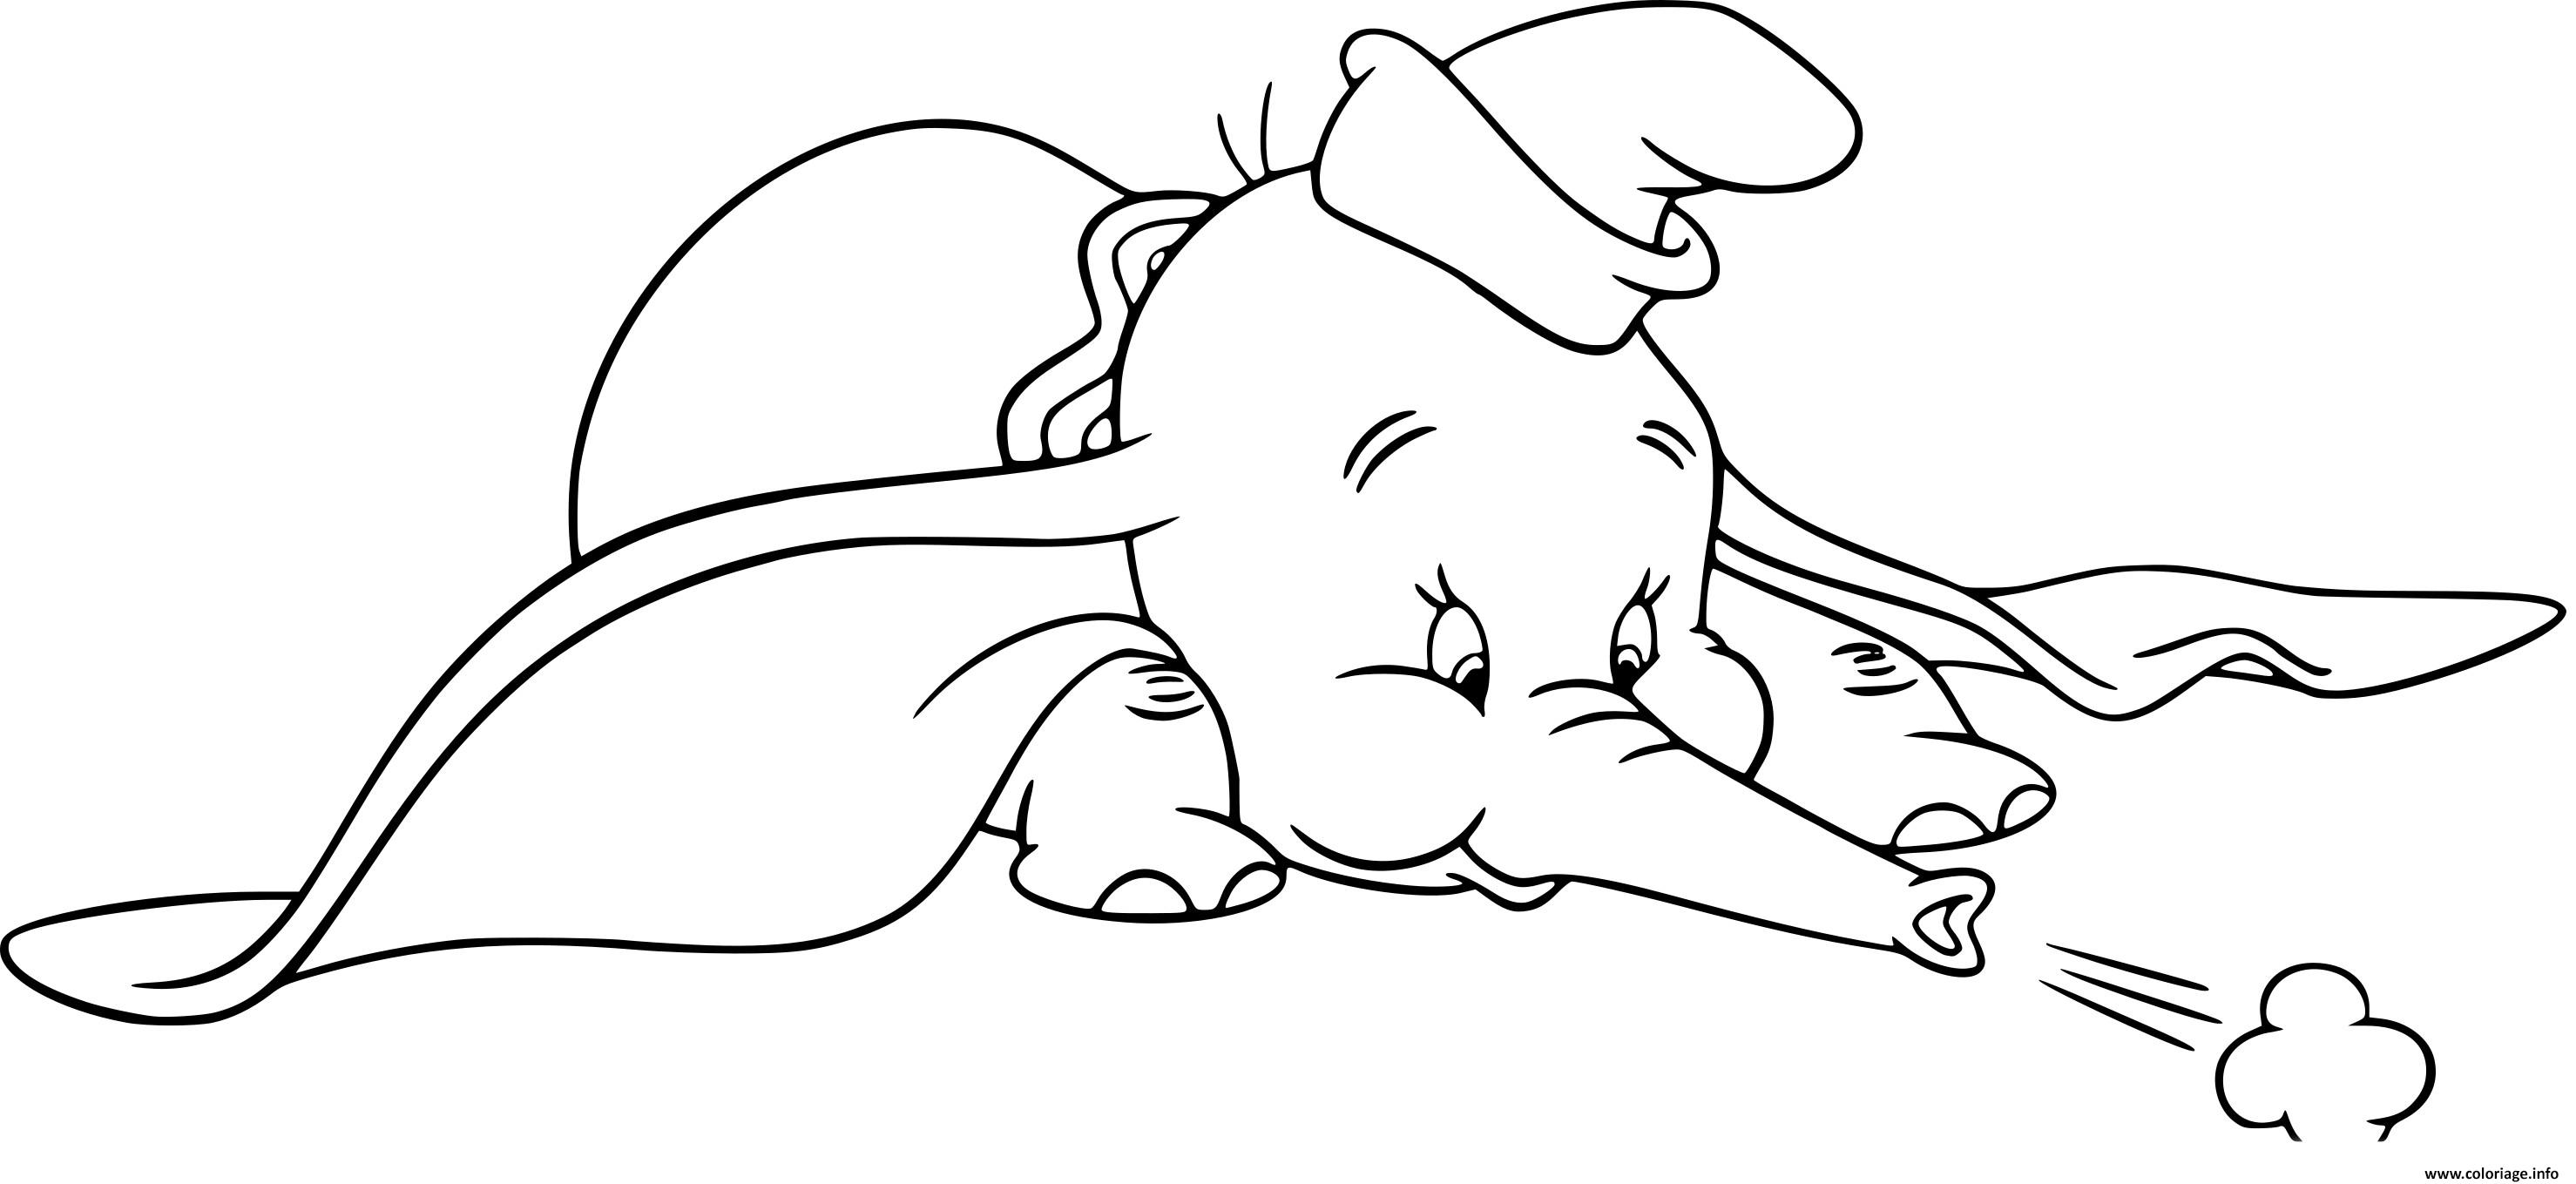 Dessin dumbo elephant avec des oreilles surdimensionnees Coloriage Gratuit à Imprimer